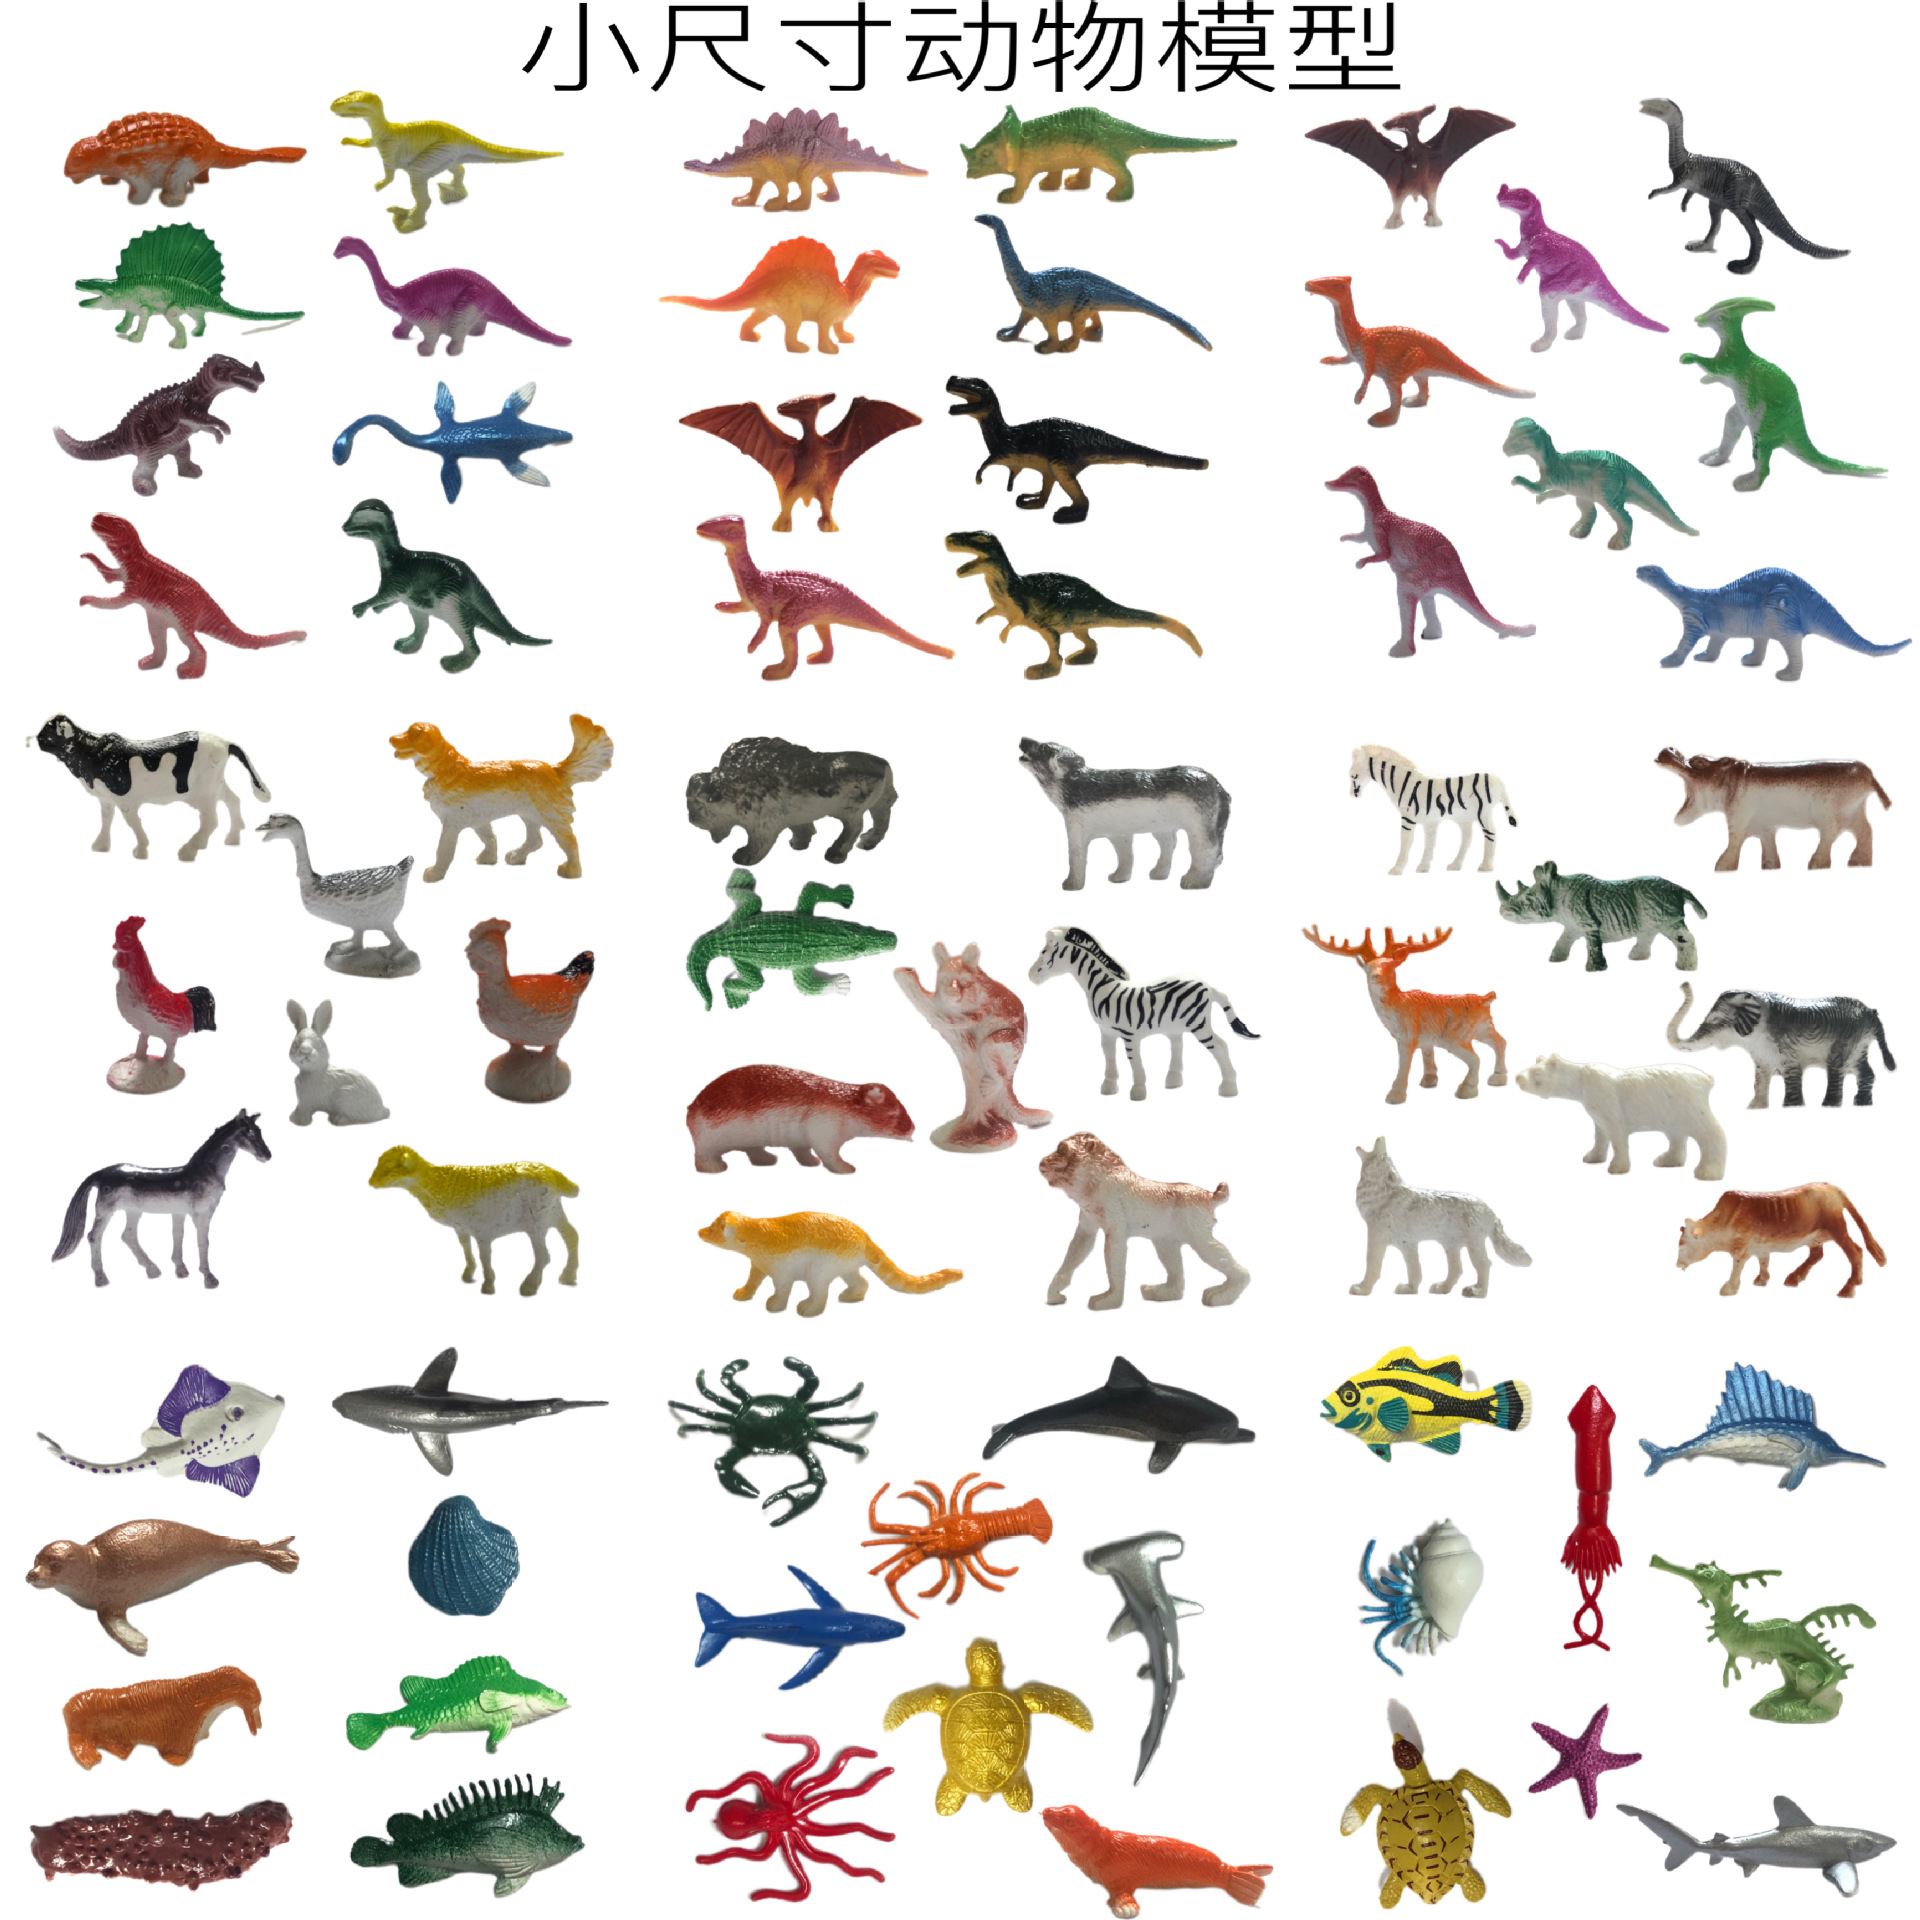 仿真野生动物模型 海洋动物侏罗纪恐龙牧场动物模型儿童考古玩具